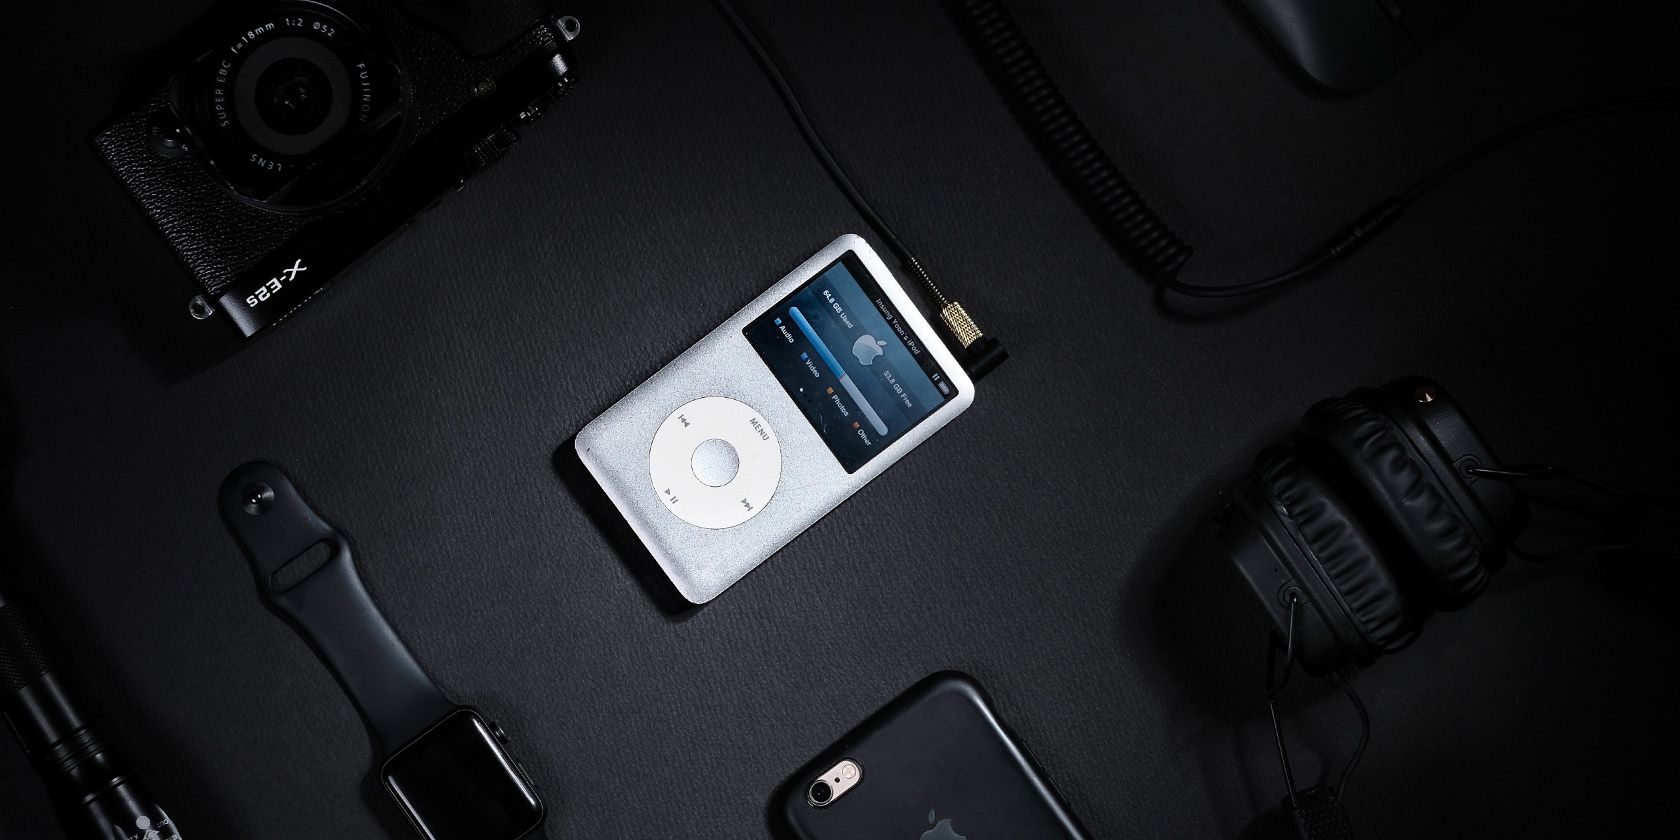 White iPod on dark background